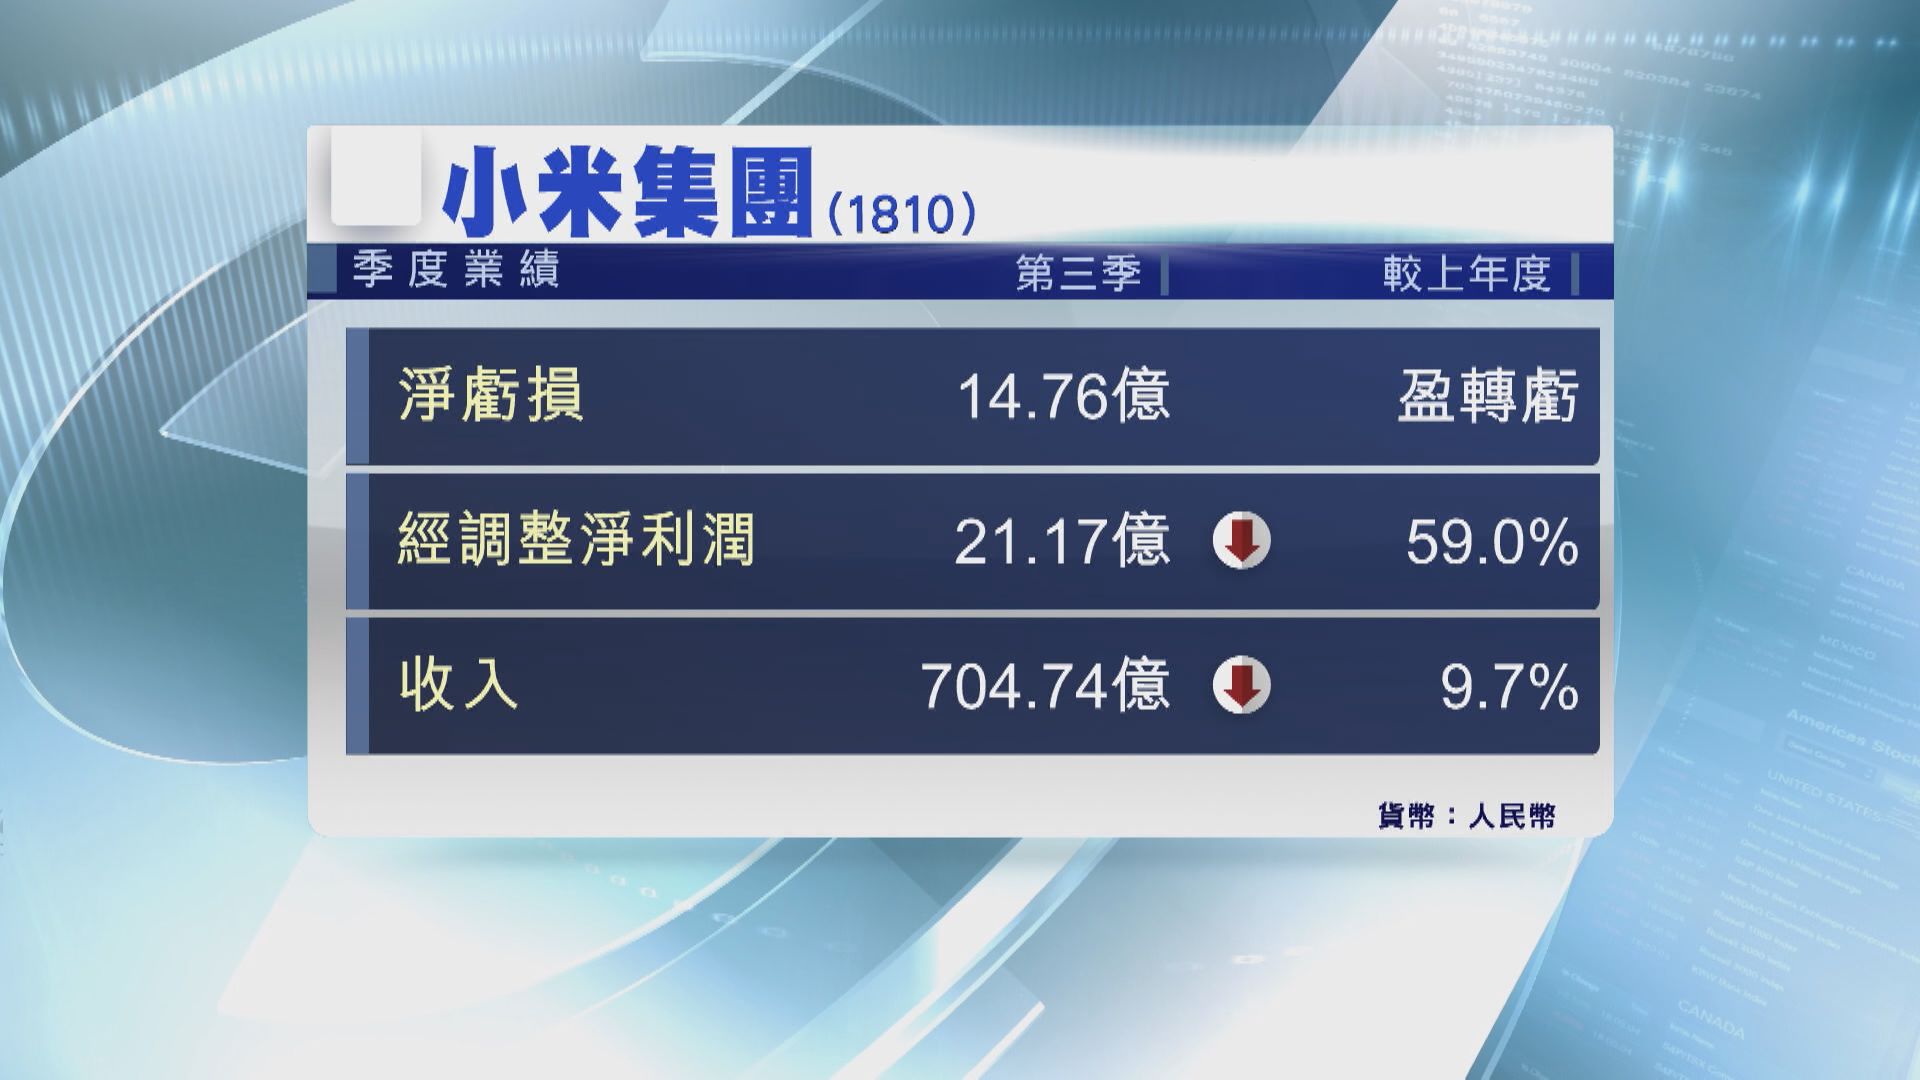 【業績速報】小米上季經調整盈利大跌59% 仍勝預期